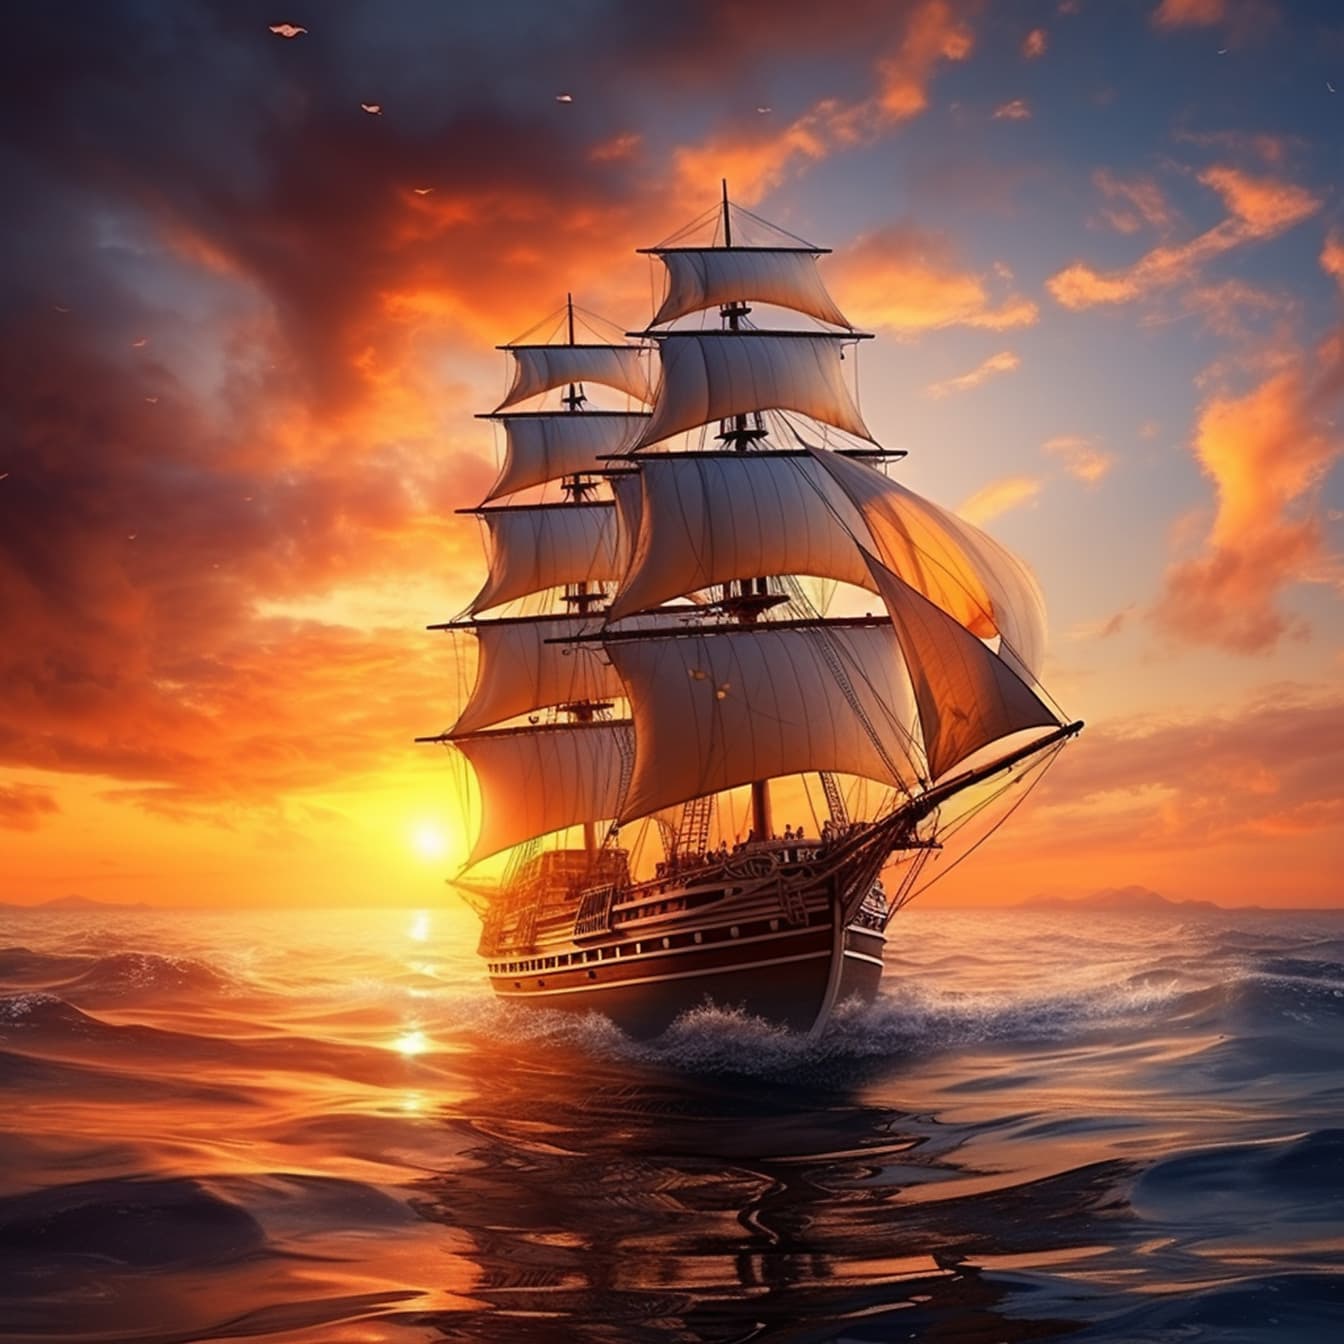 Con thuyền buồm hùng vĩ trên đại dương trong hoàng hôn màu vàng cam ấn tượng